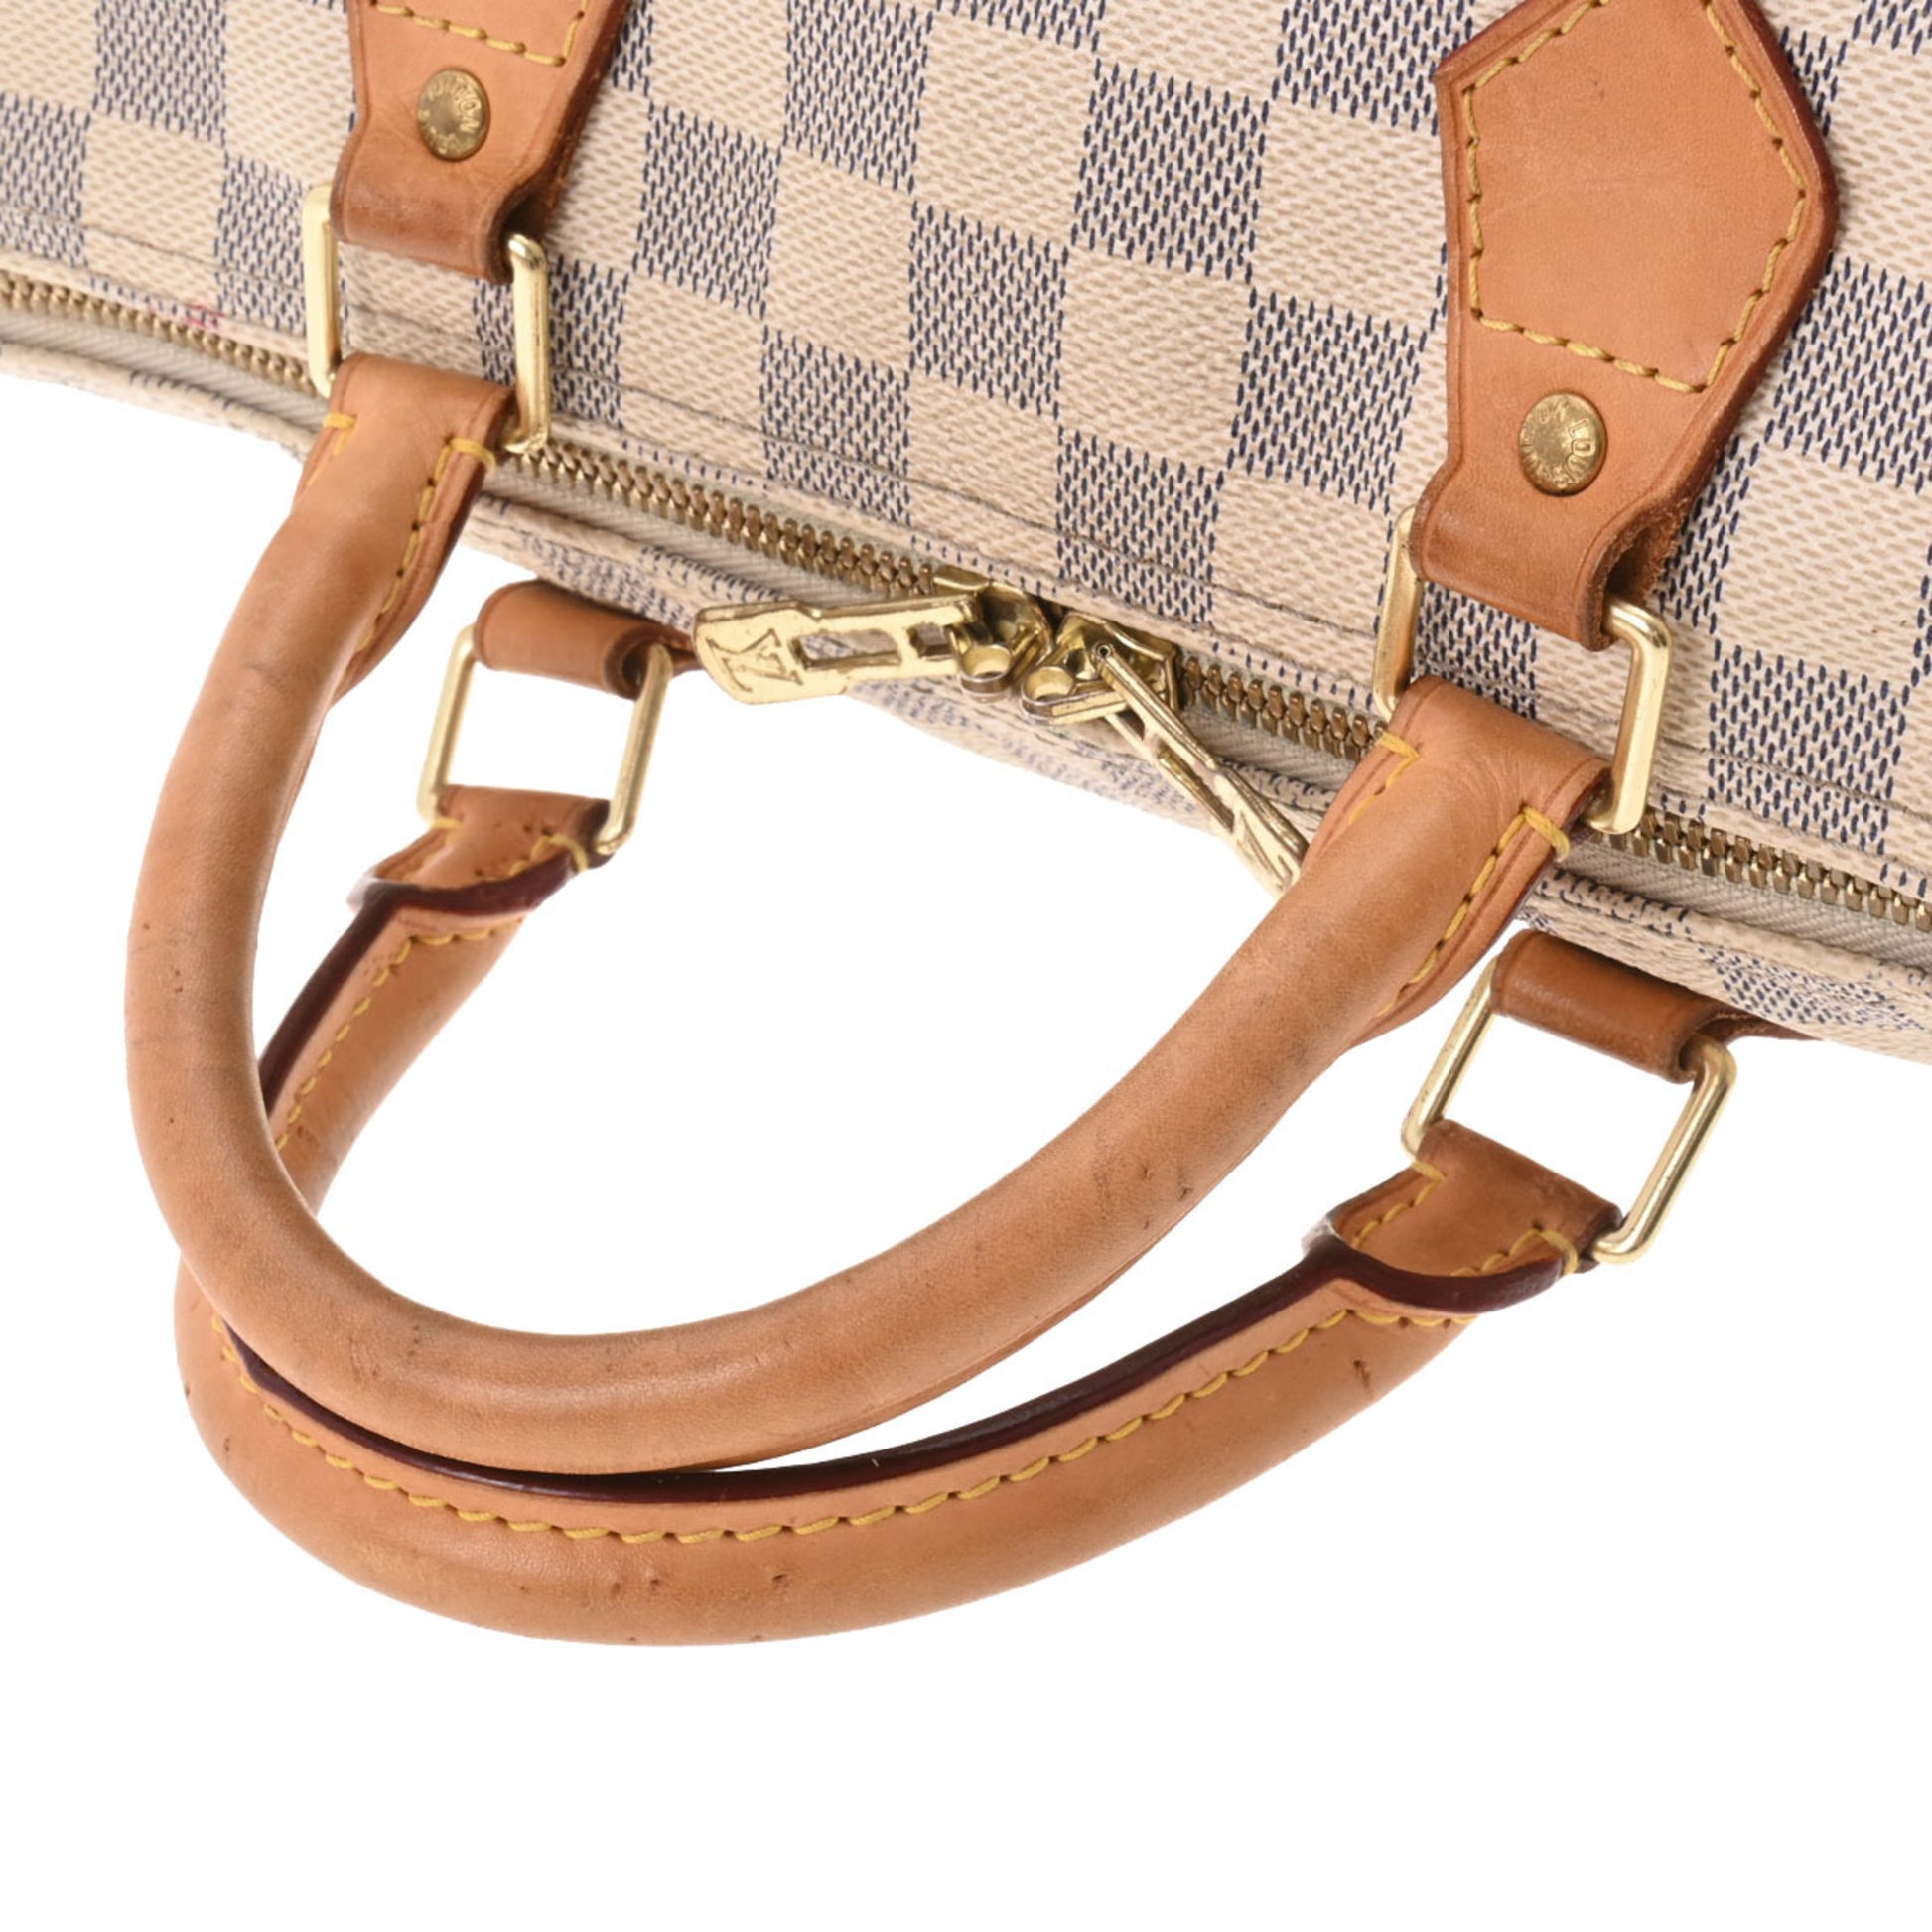 Louis Vuitton Damier Azur Speedy Bandouliere 30 Made in USA White N41001 Women's Handbag